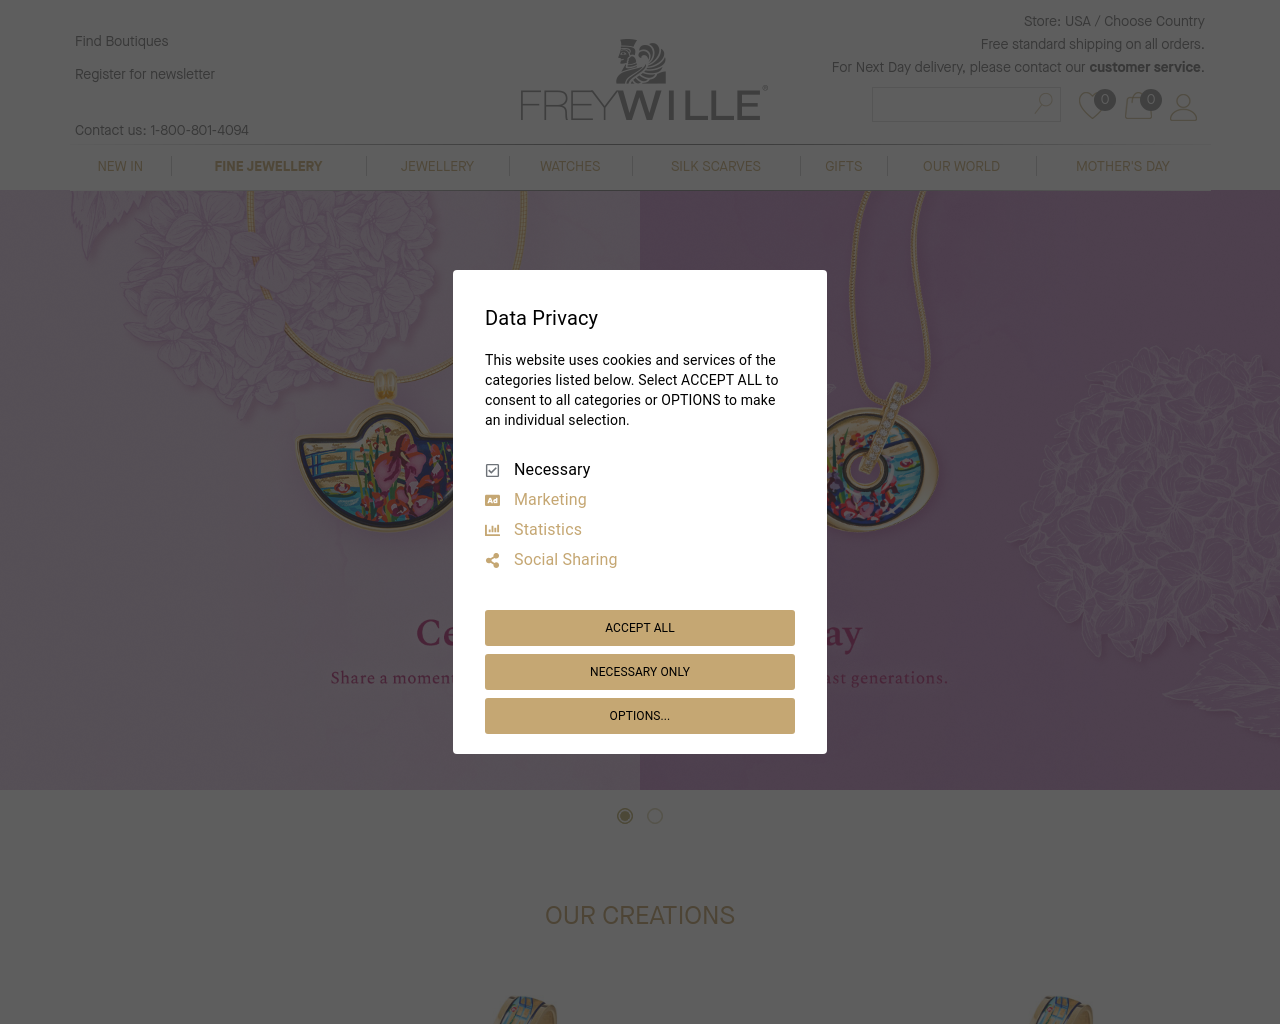 frey-wille.com